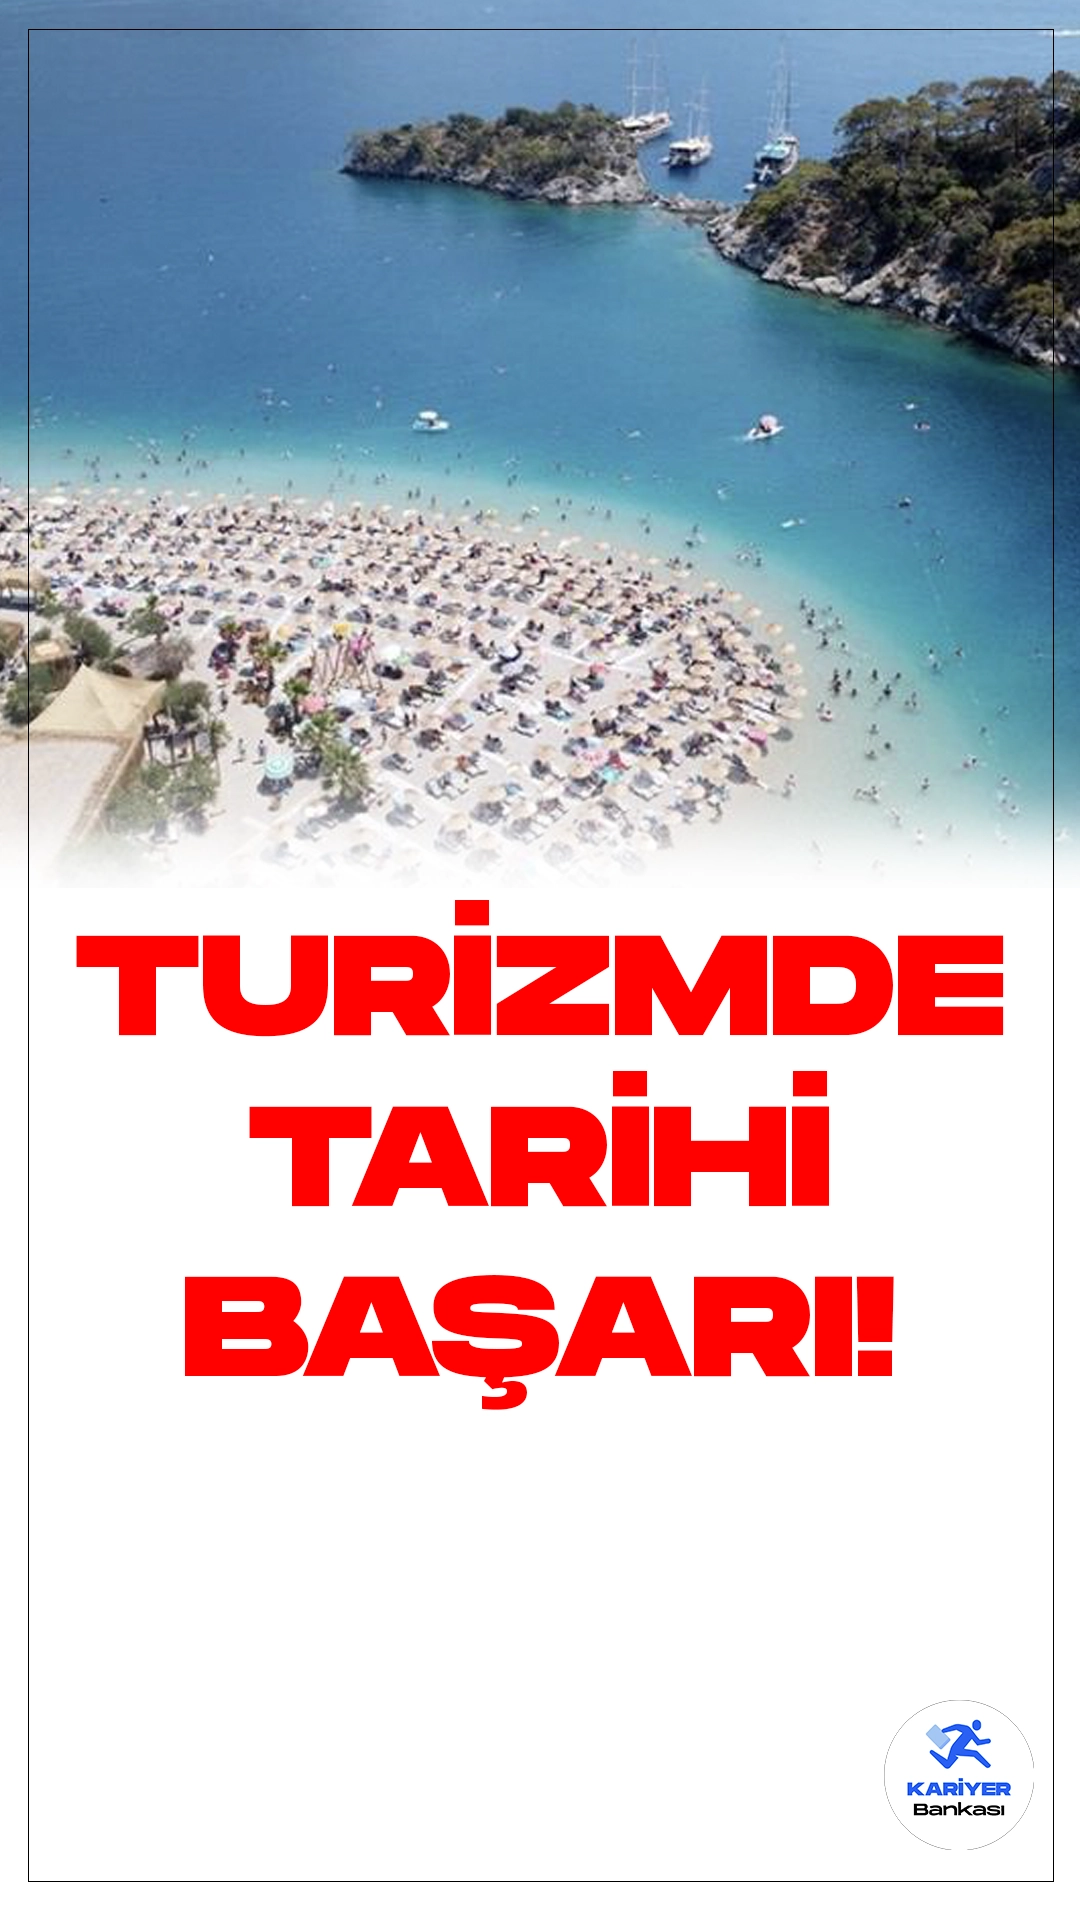 Hazine Bakanı Şimşek:Türkiye Turizmde Tarihi Bir Başarı Elde Etti.Hazine ve Maliye Bakanı Mehmet Şimşek, Türkiye'nin turizmde olağanüstü bir performans sergileyerek tüm zamanların en iyi sonuçlarını elde ettiğini belirtti.